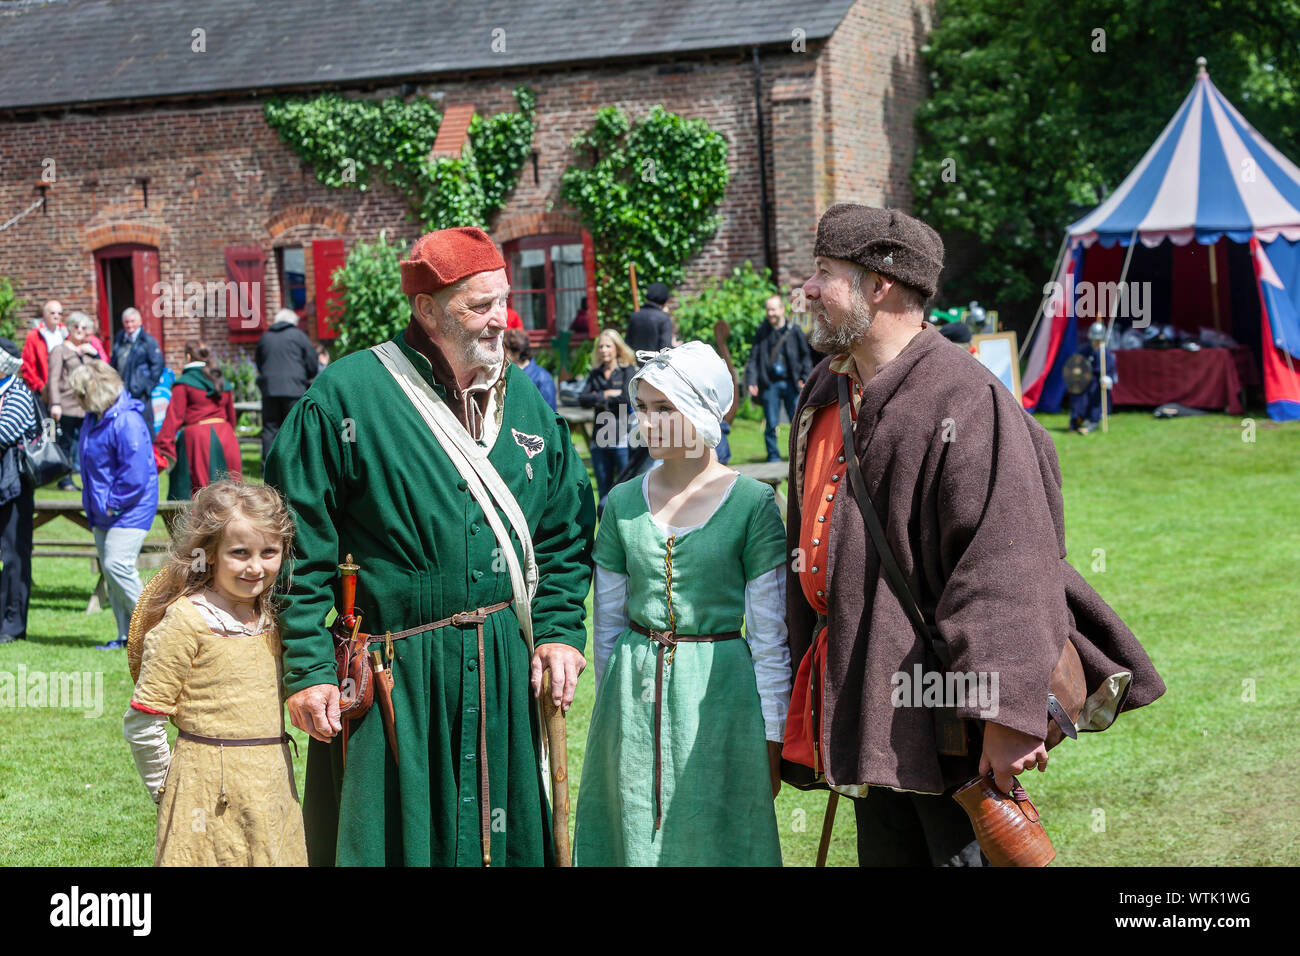 Un gruppo di persone in costume medievale partecipanti al Medieval Fayre in Tatton Park, Knutsford, Cheshire. Foto Stock